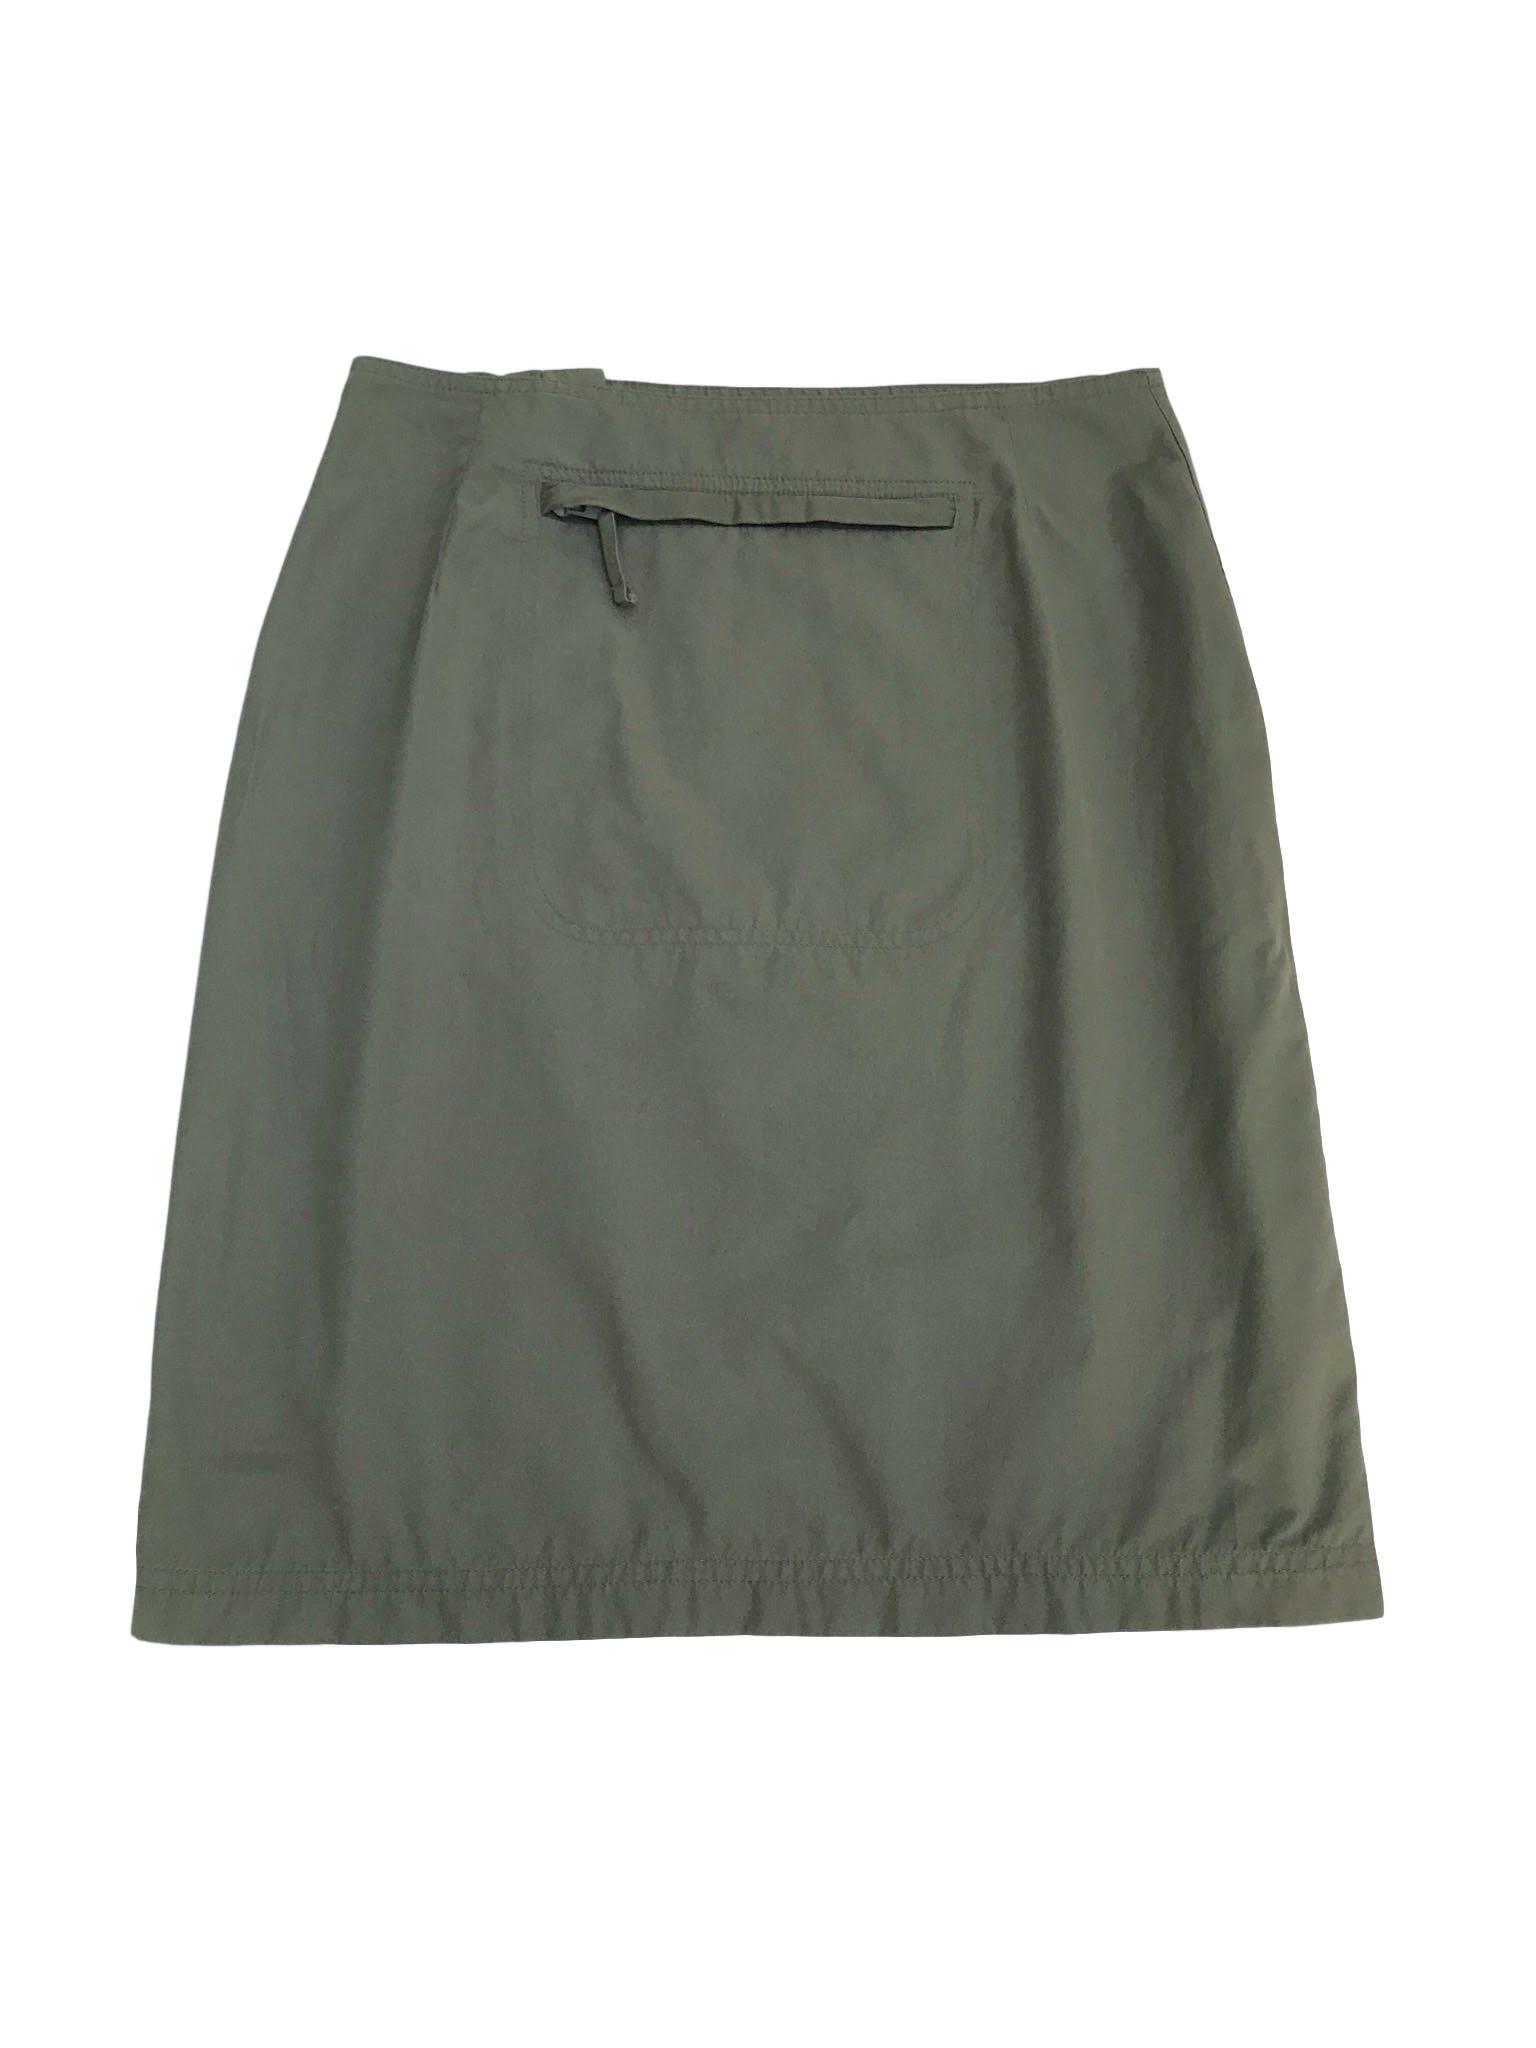 Falda verde tipo taslán, cierre lateral y bolsillo posterior. Estilo outdoor super cool. Pretina76cm Largo 55cm 